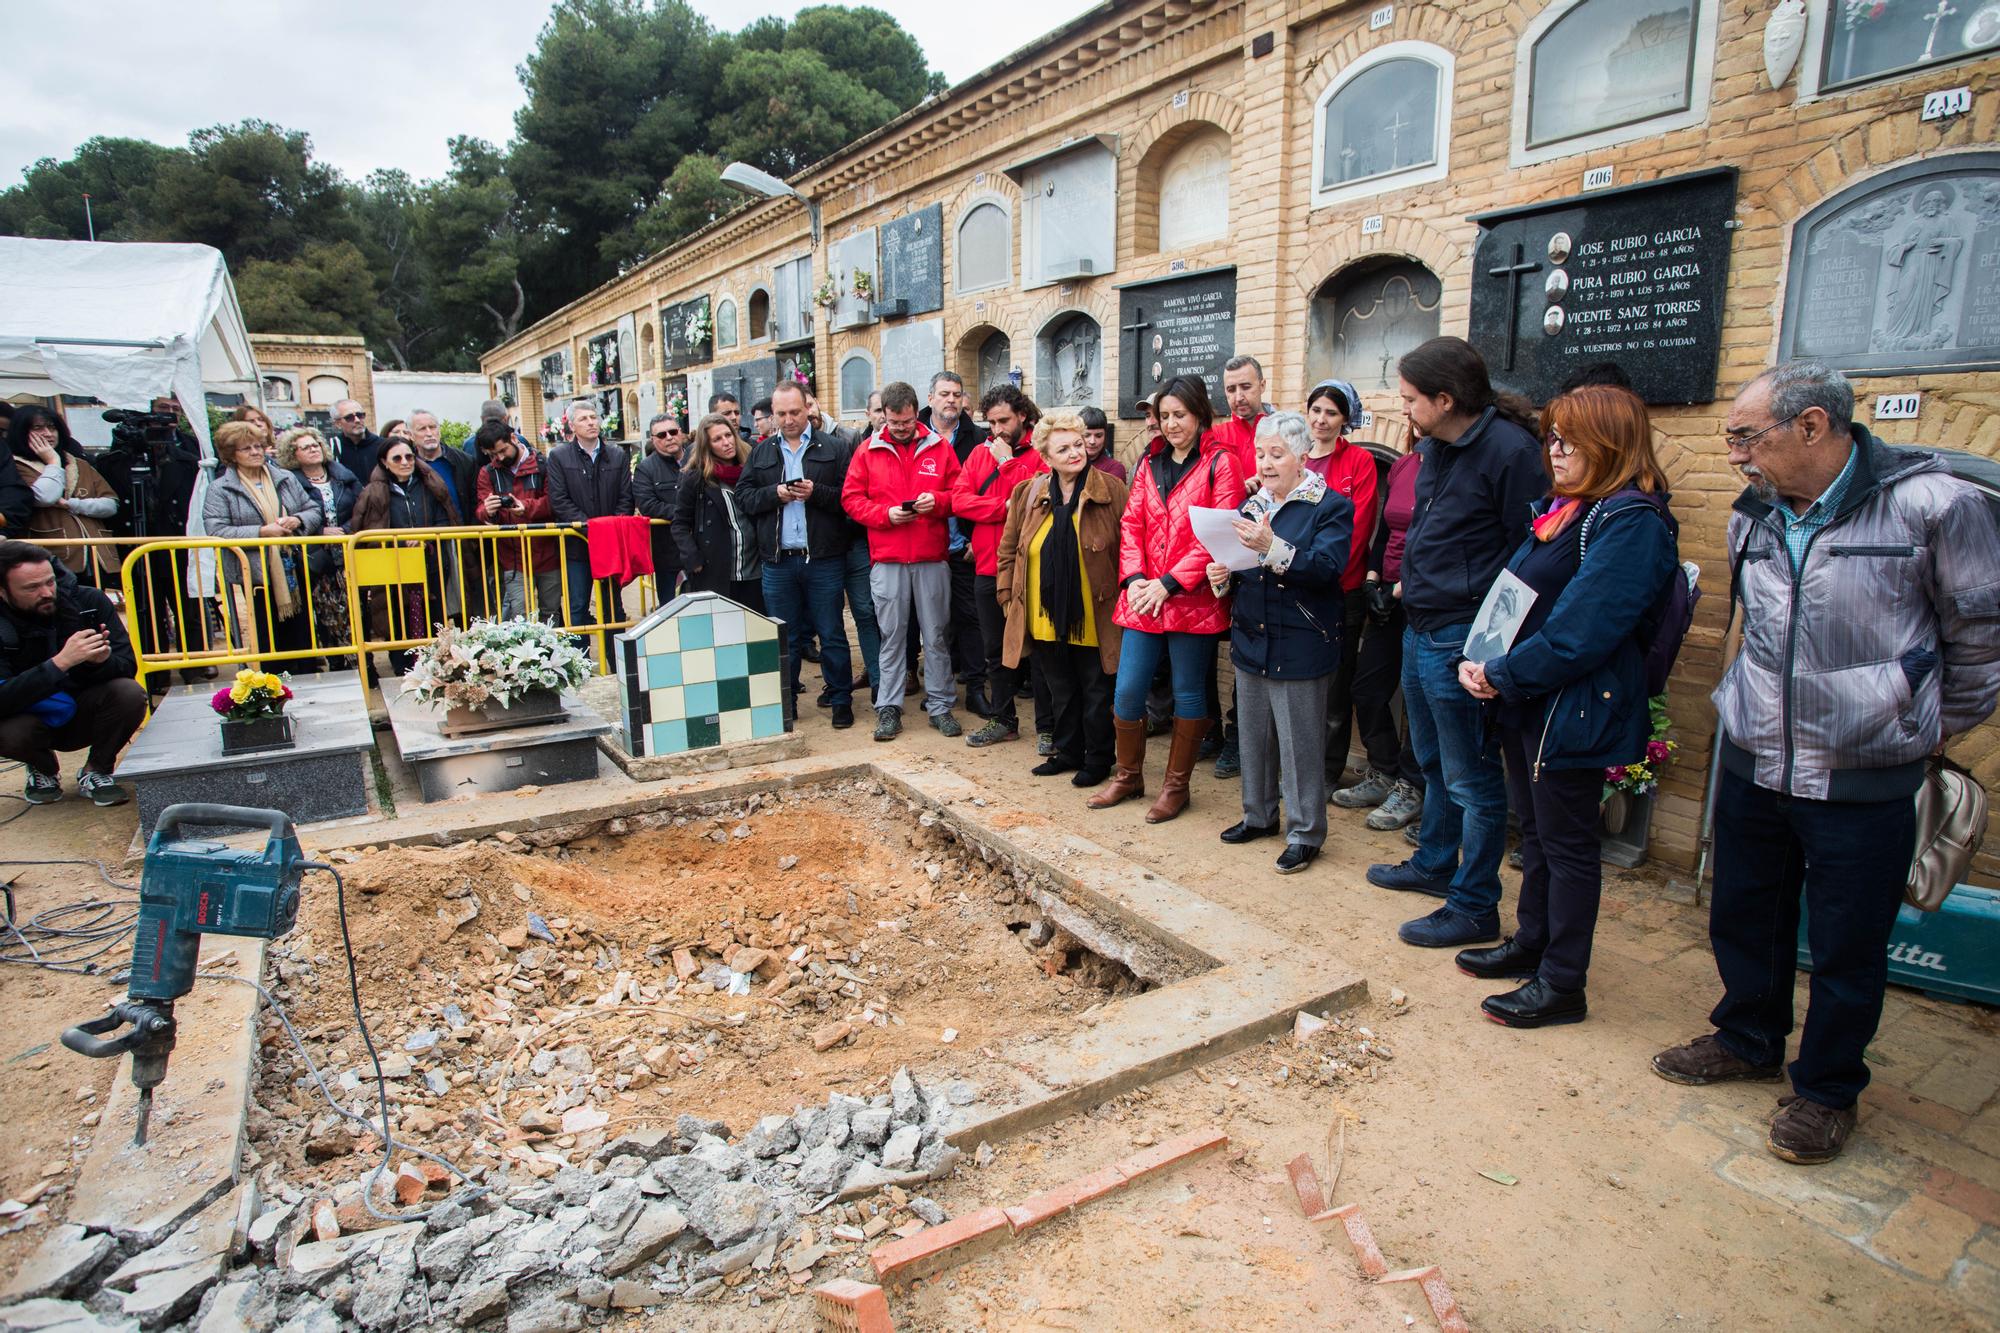 POLITICA  Pablo Iglesias visita el inicio de la exhumaci�n de la fosa com�n donde est� su tio abuelo en el cementerio de Paterna. Posteriormente se ha desplazado al pared�n de Espa�a. Pablo Iglesias.jpg